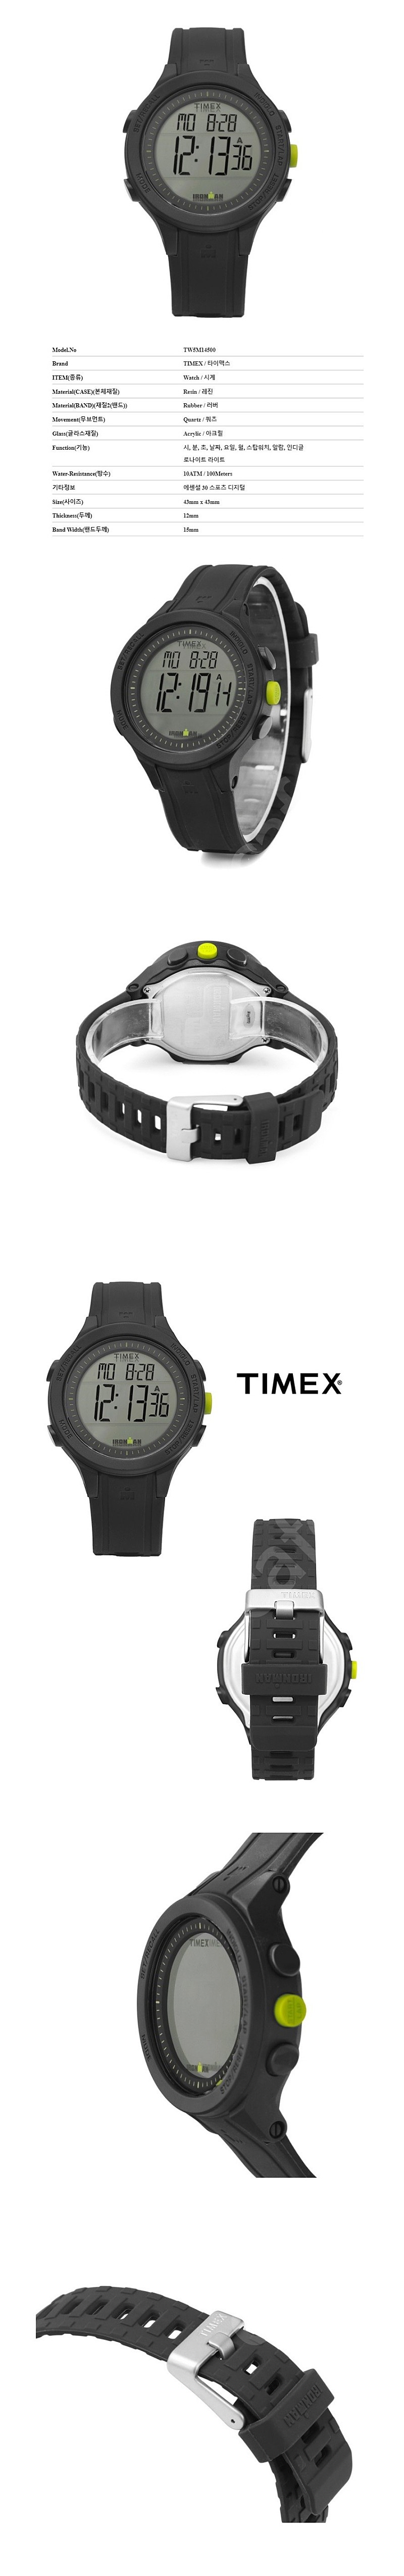 TIMEX IRONMAN TW5M14500 타이맥스 아이언맨 TW5M14500 시계 판매합니다. 박스 새제품